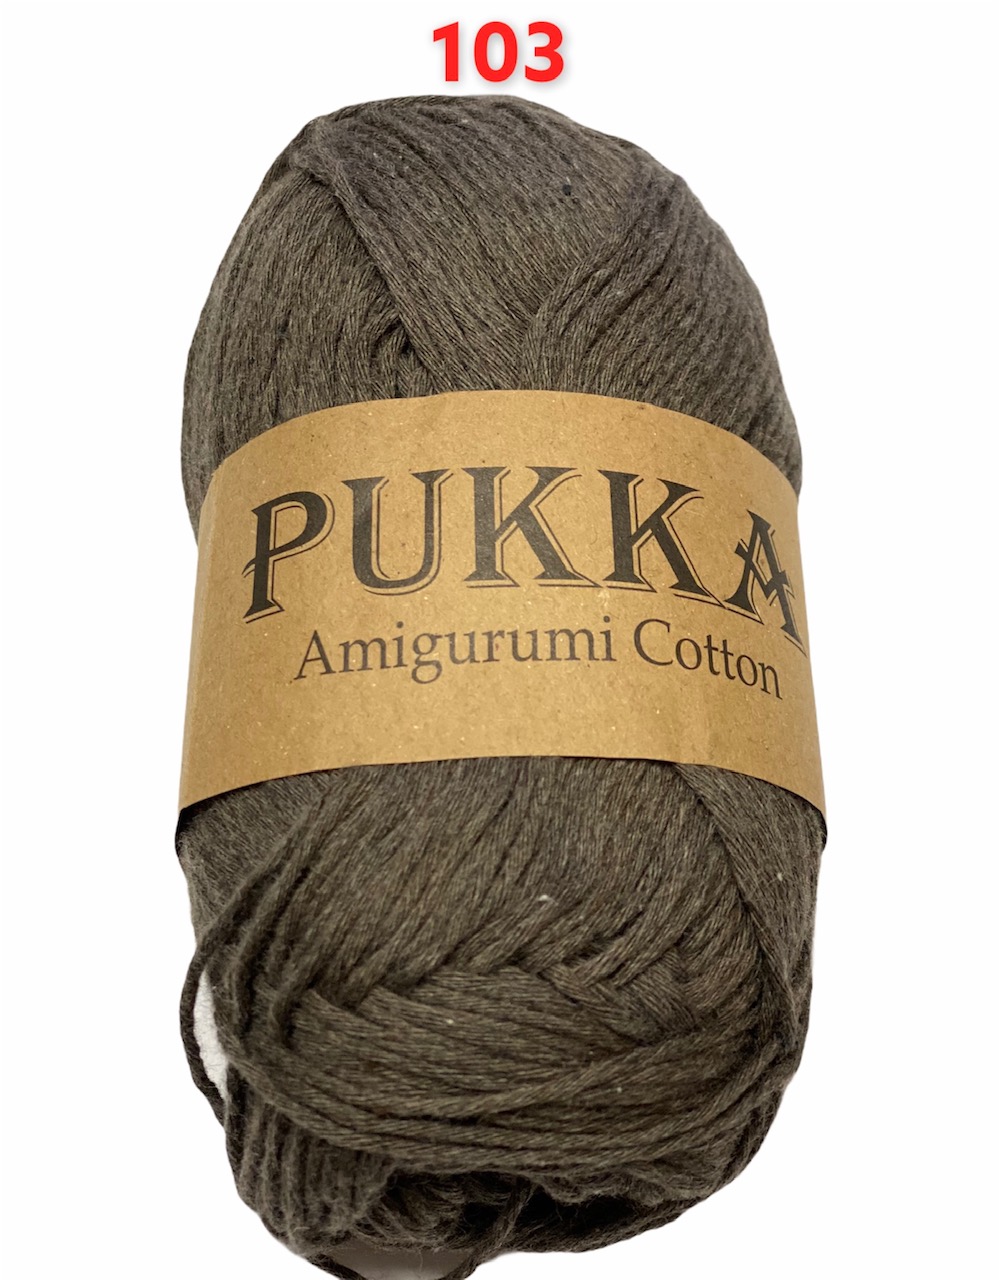 PUKKA Amigurumi Cotton 100g,103